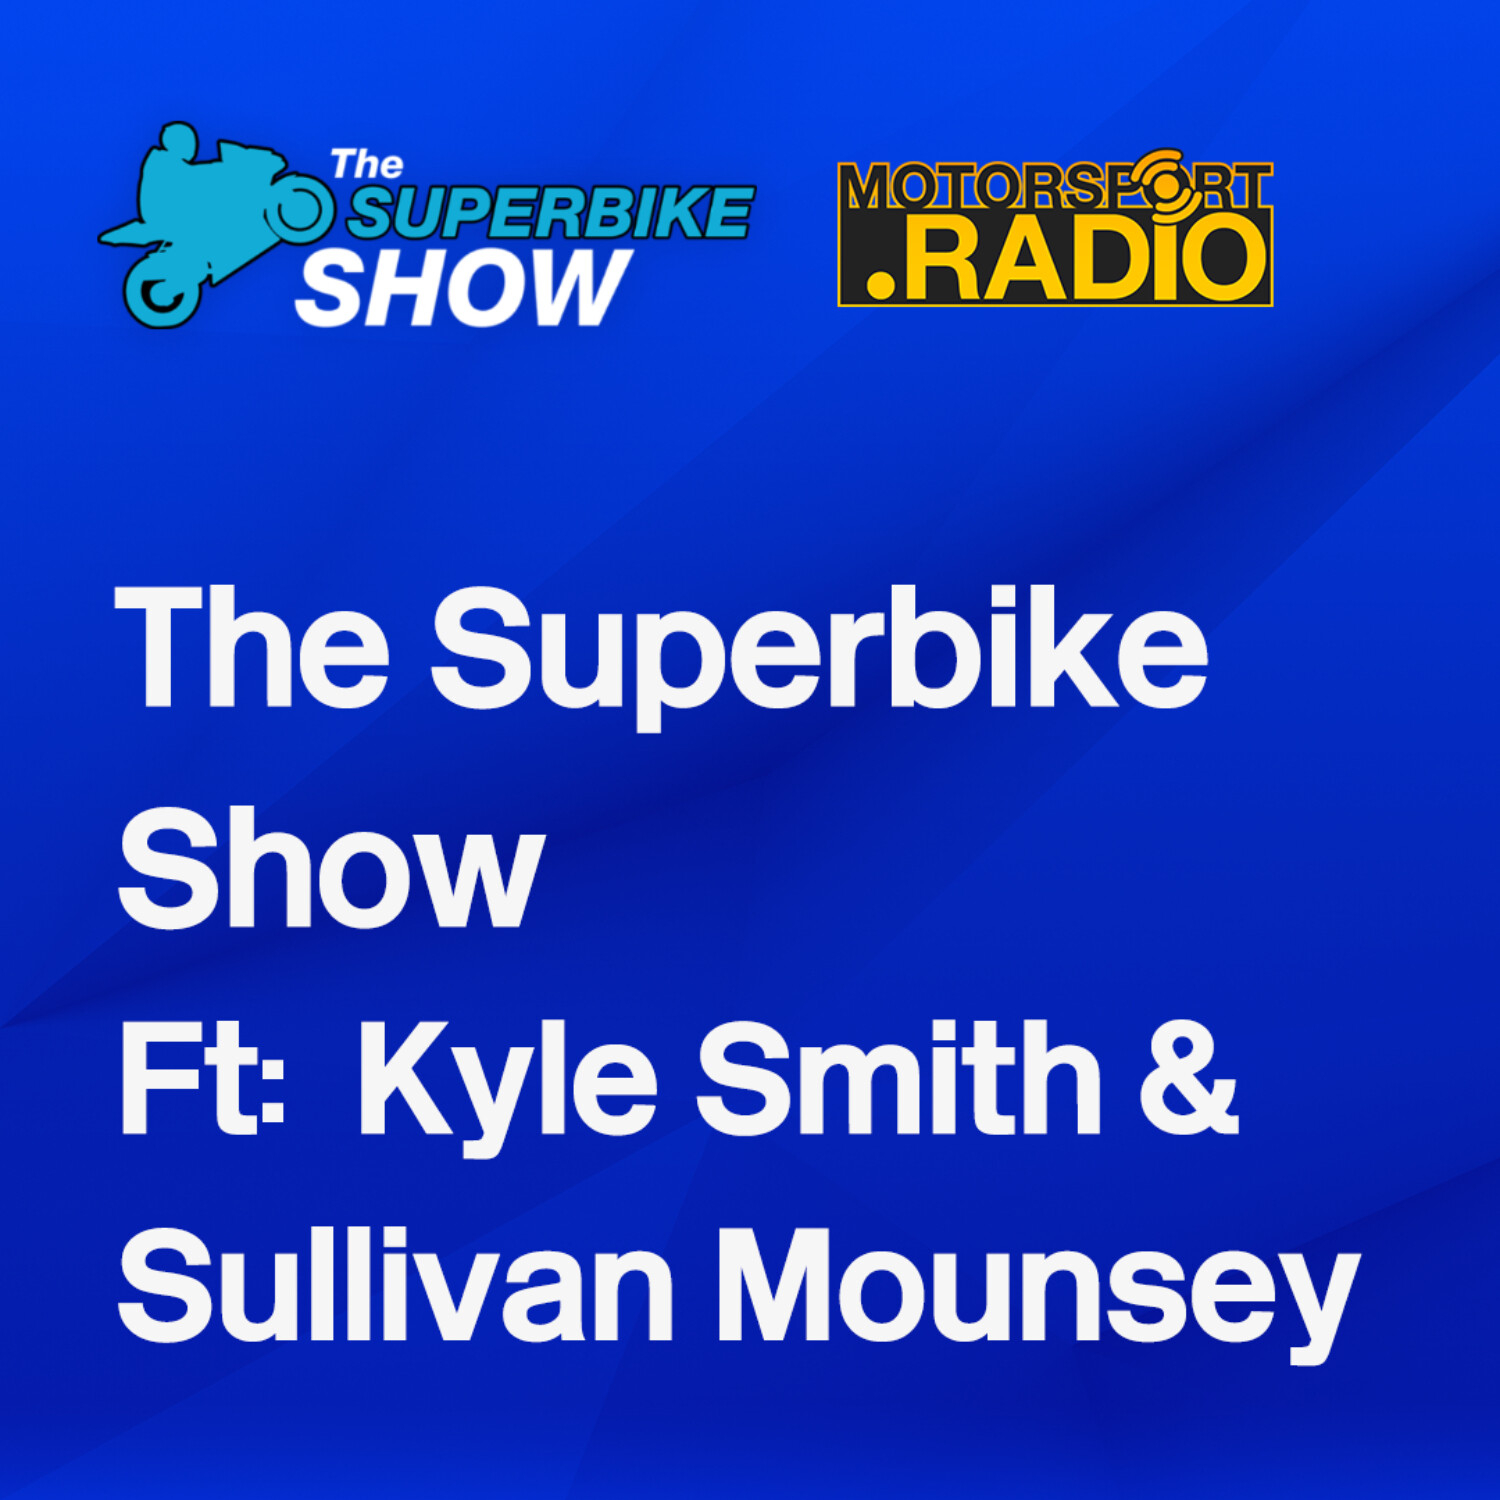 Kyle Smith & Sullivan Mounsey Interviews